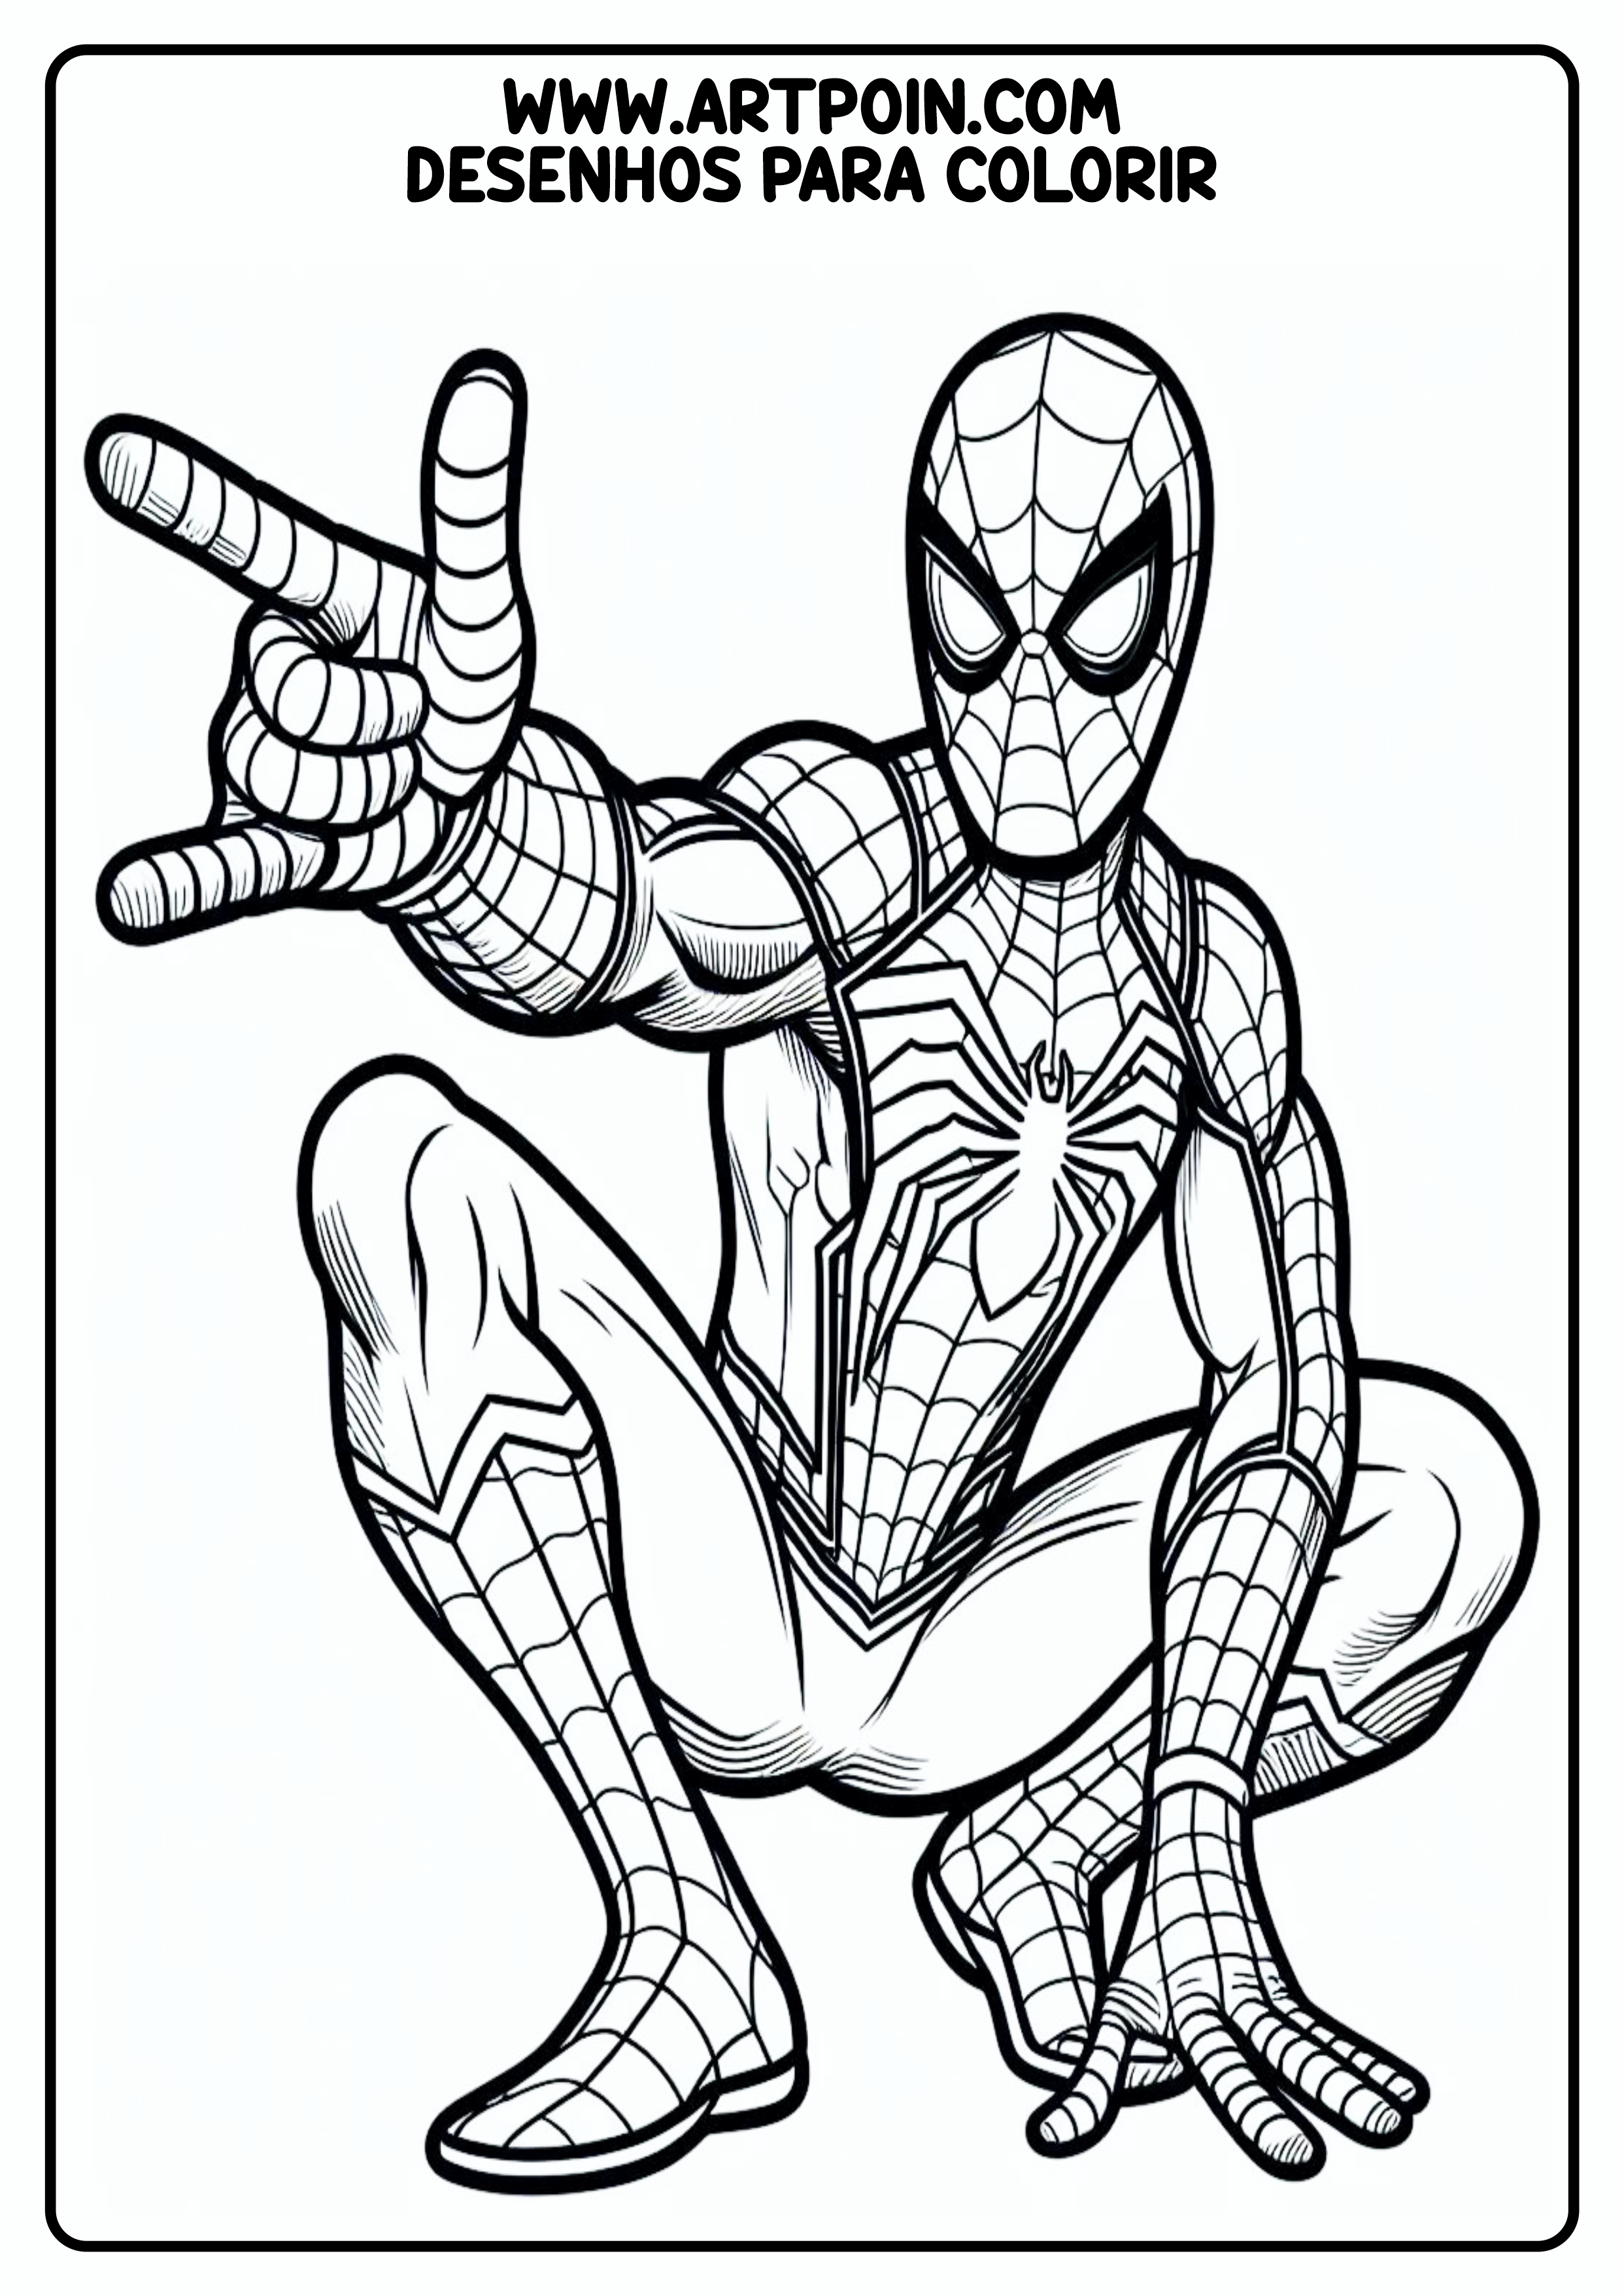 Homem-Aranha spider-man desenho para colorir artes visuais png